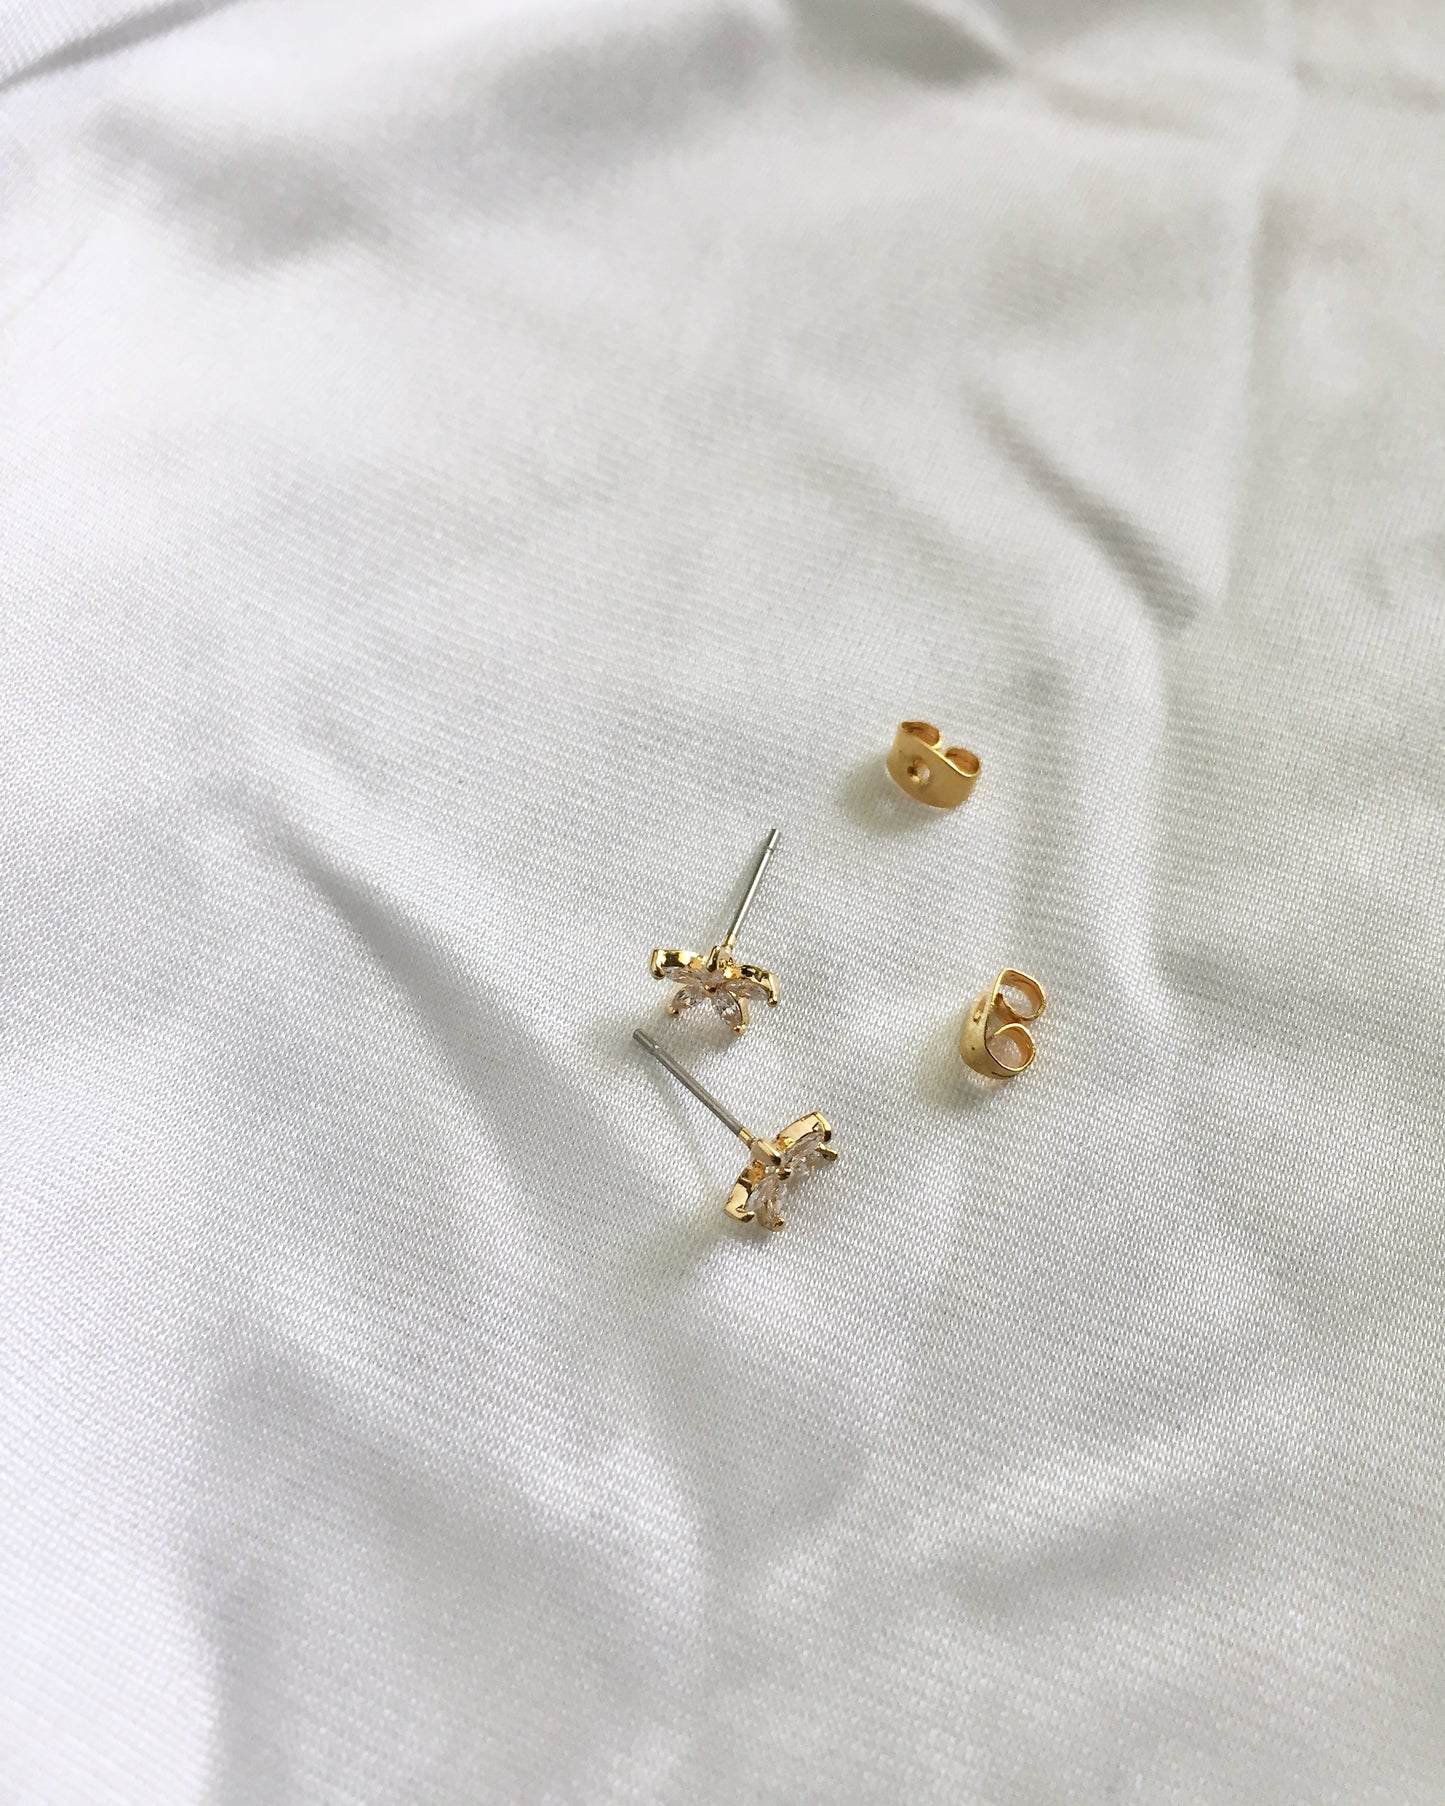 Flower CZ Stud Earrings | Small Delicate Stud Earrings | Dainty Stud Earrings | IB Jewelry